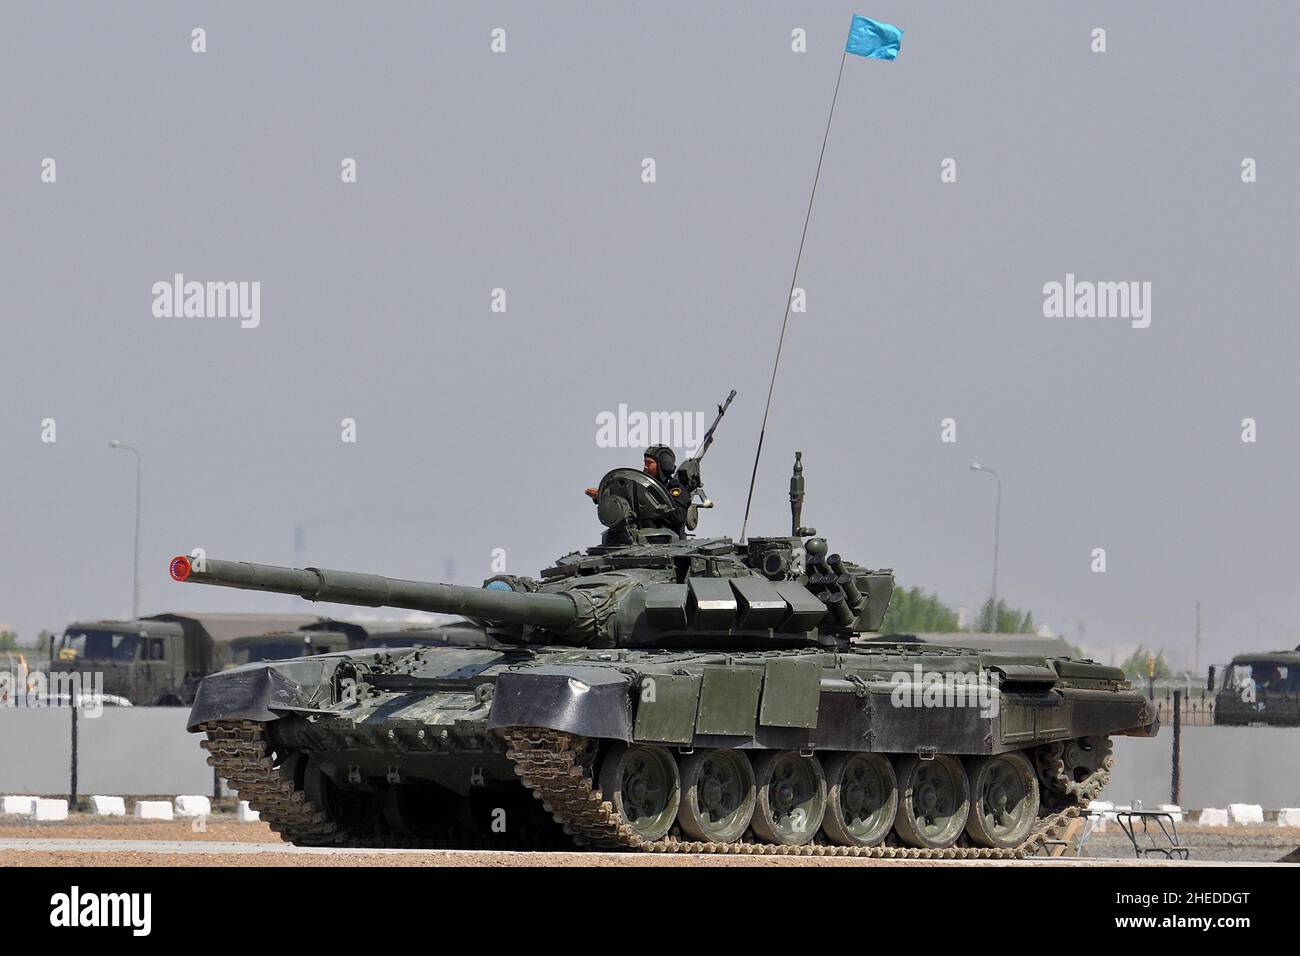 CHAR DE BATAILLE PRINCIPAL T-72 DE L'ARMÉE DU KAZAKHSTAN. Banque D'Images